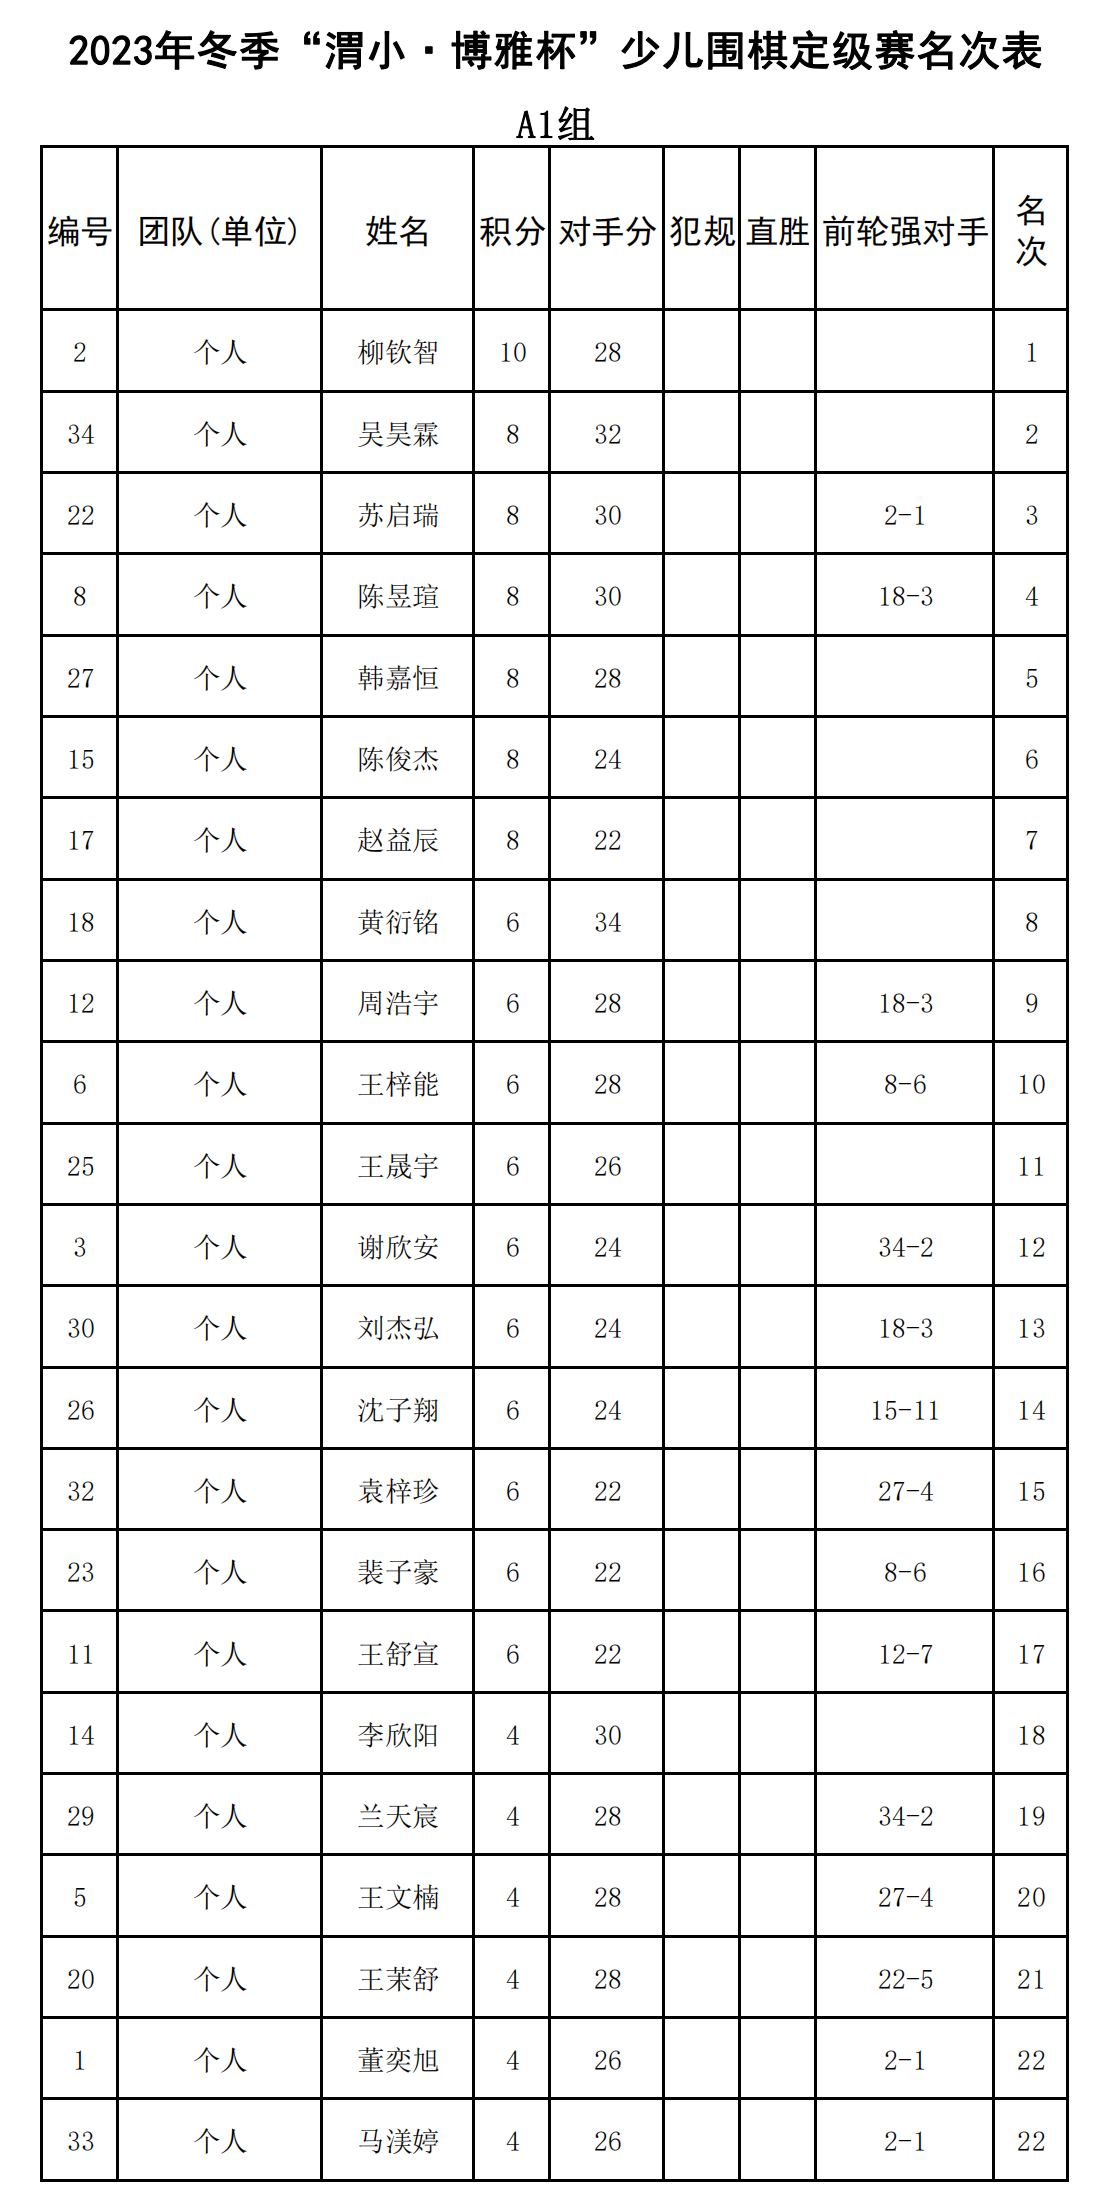 2023年冬季“渭小·博雅杯”少儿围棋定级赛A1组(名次表)_00.png